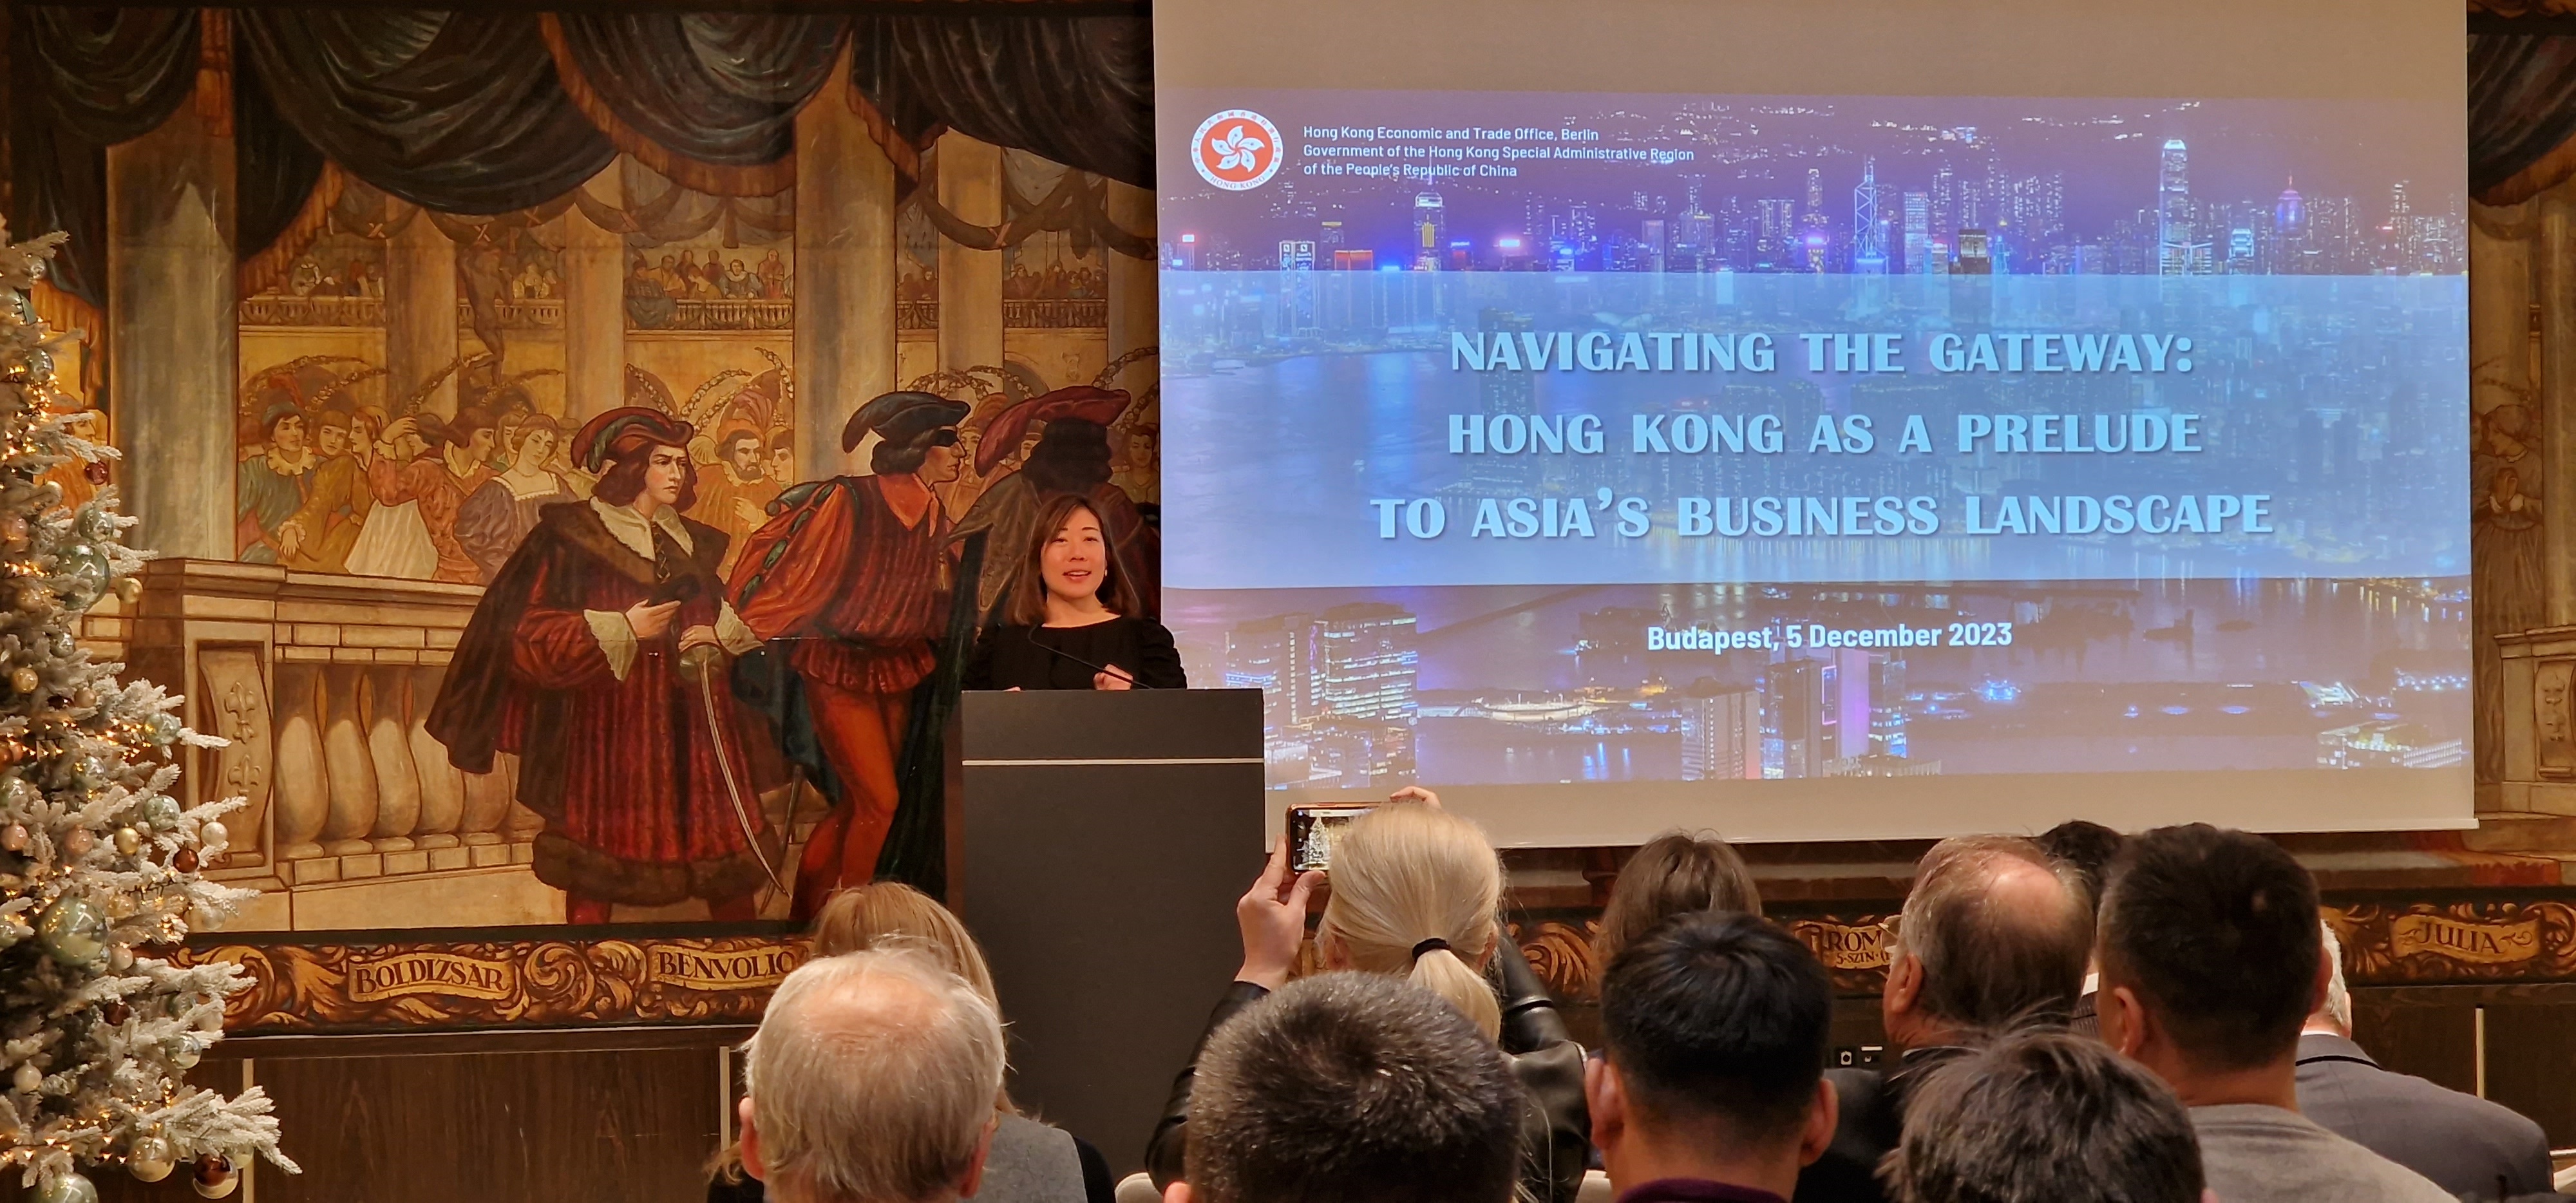 Perspektiven für ungarische Unternehmen in Hongkong